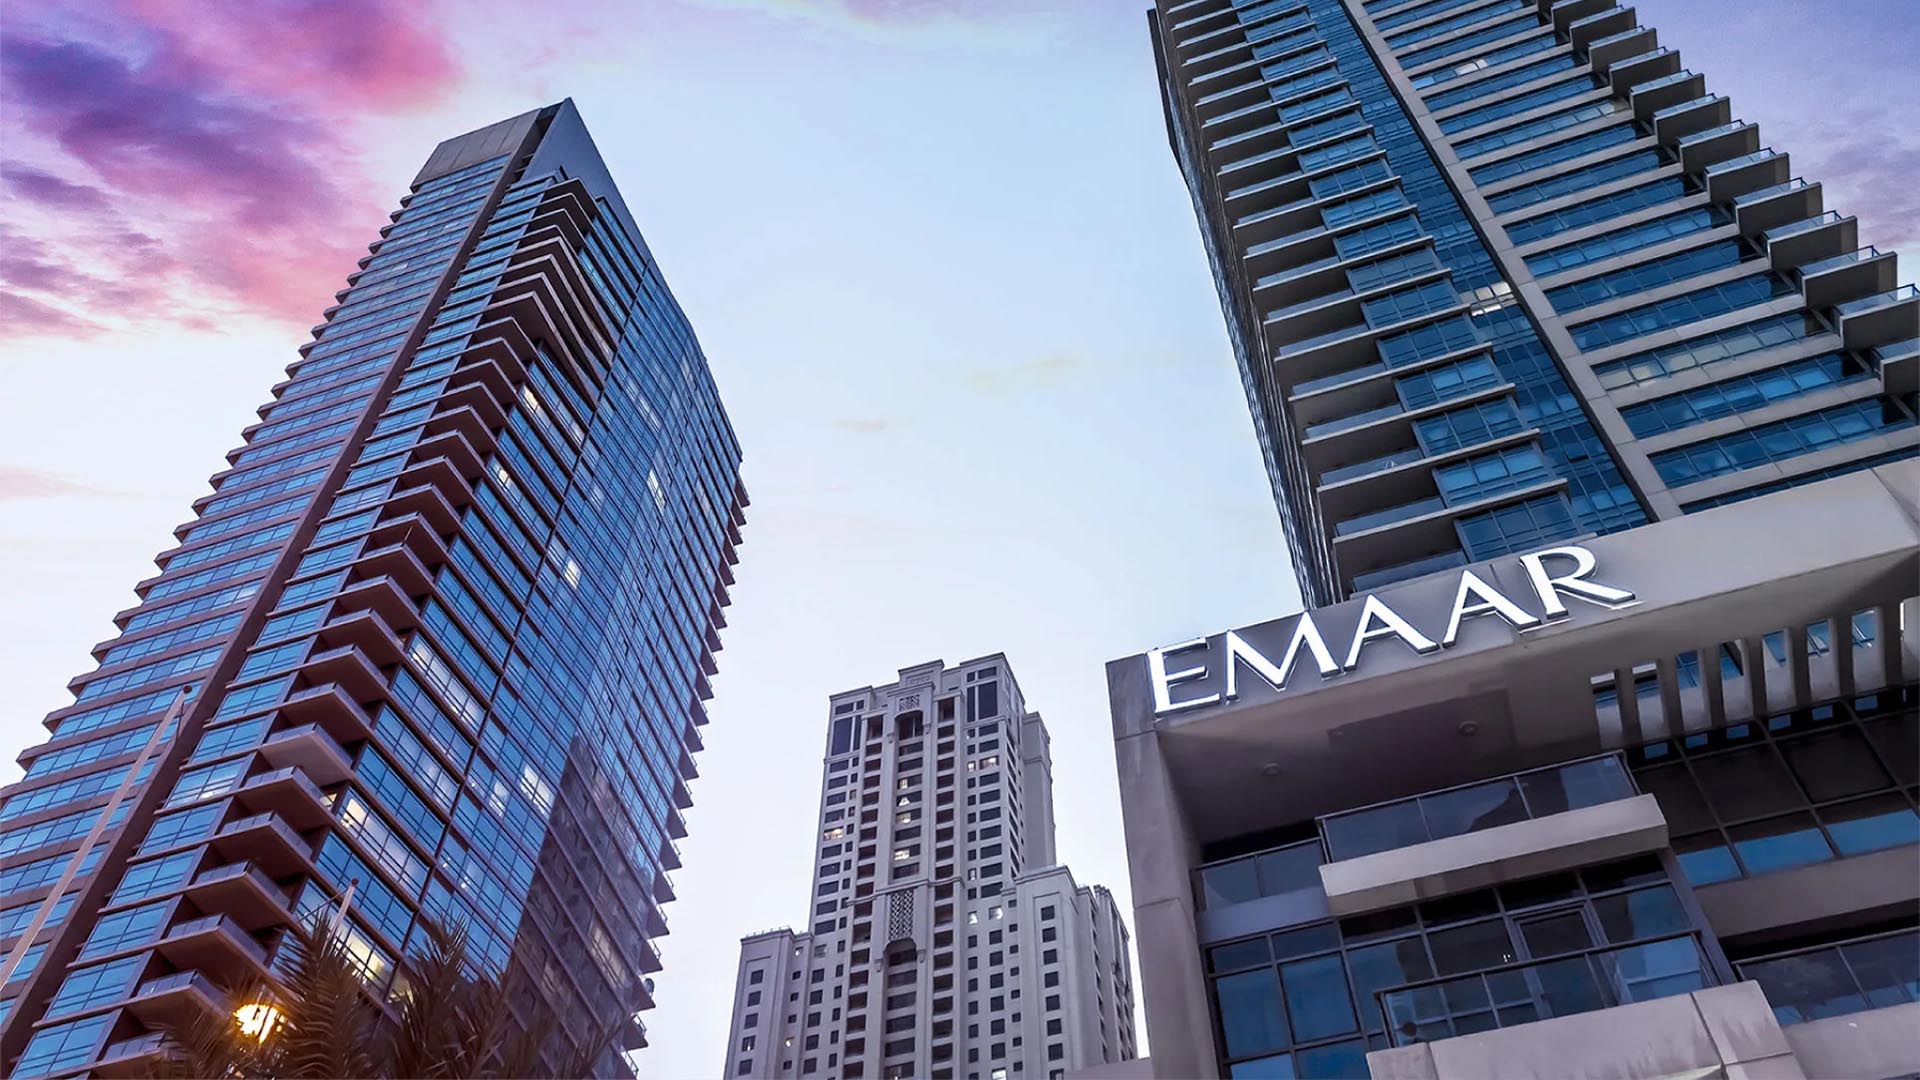 ST.REGIS RESIDENCES by Emaar Properties in Downtown Dubai, Dubai, UAE - 8